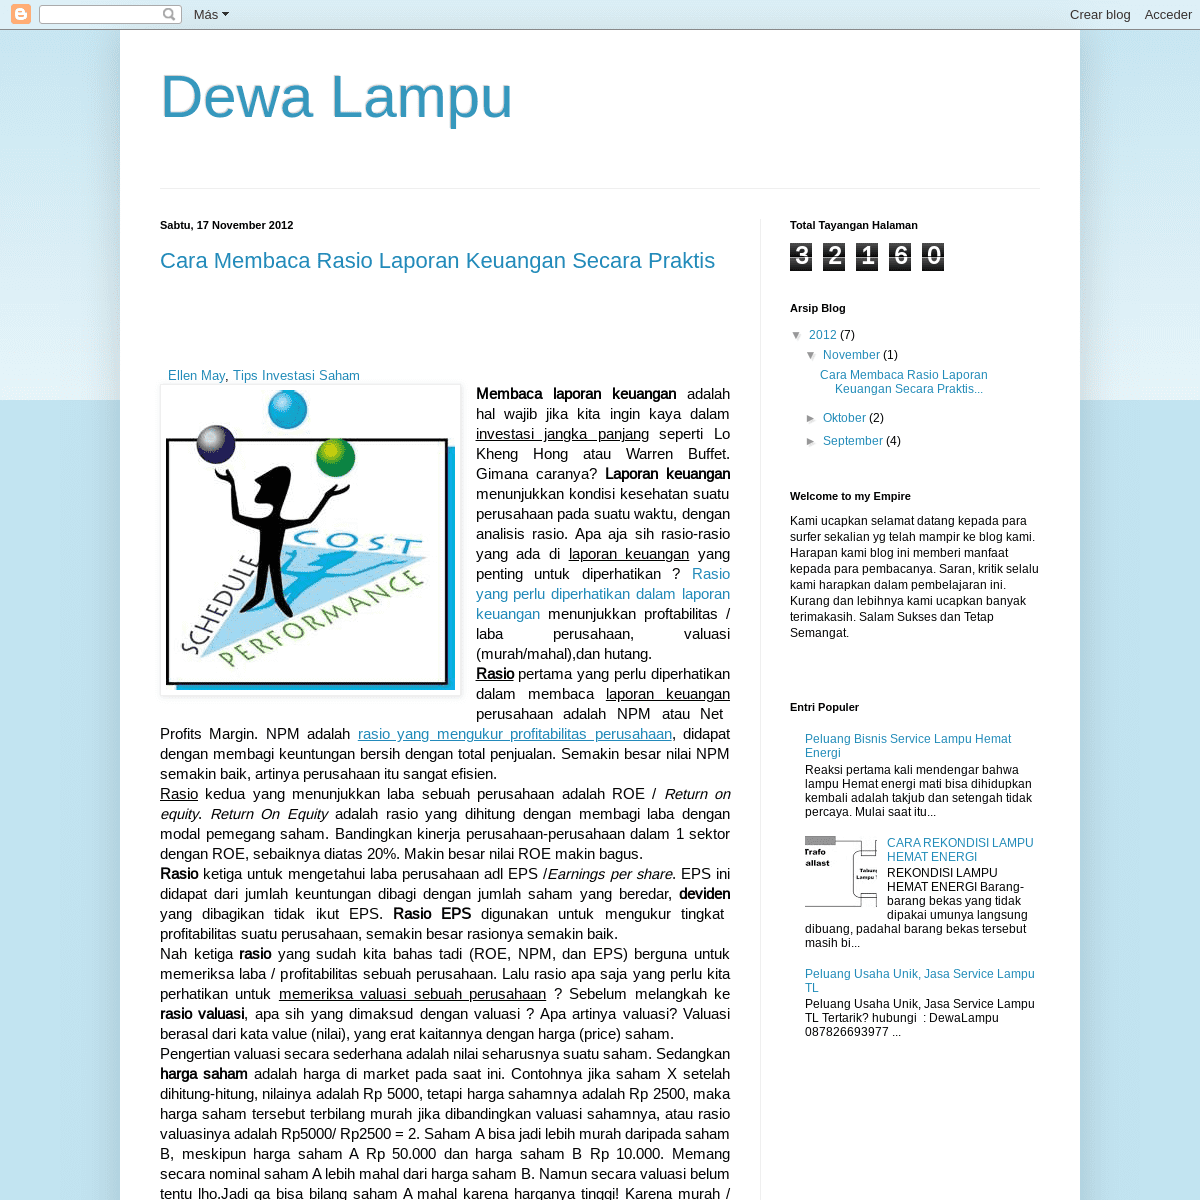 A complete backup of dewalampu.blogspot.com